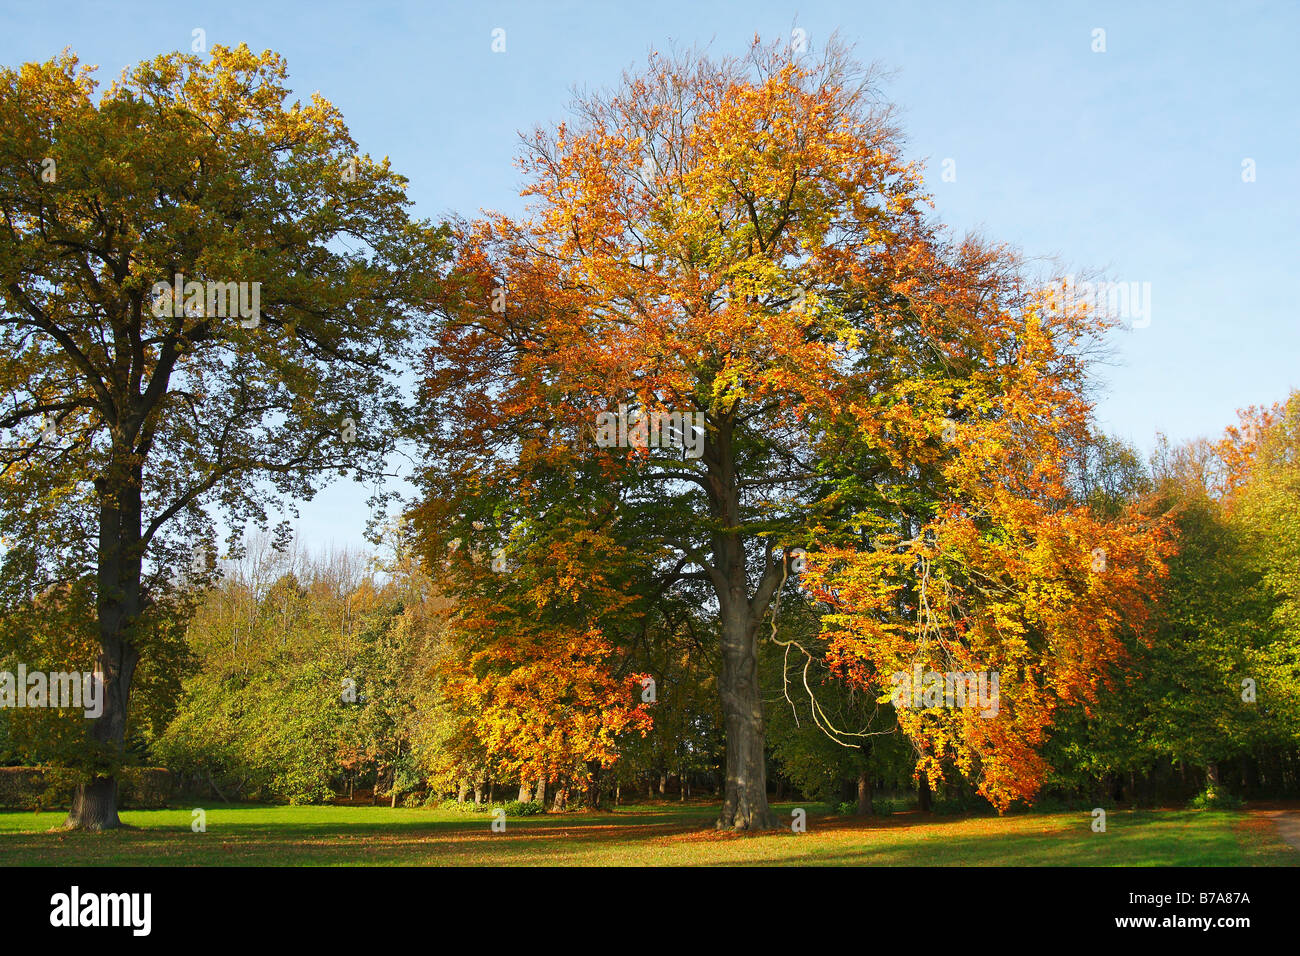 Le hêtre commun, Hêtre européen (Fagus sylvatica) et le chêne pédonculé (Quercus robus) dans un parc, les feuilles en couleurs d'automne Banque D'Images